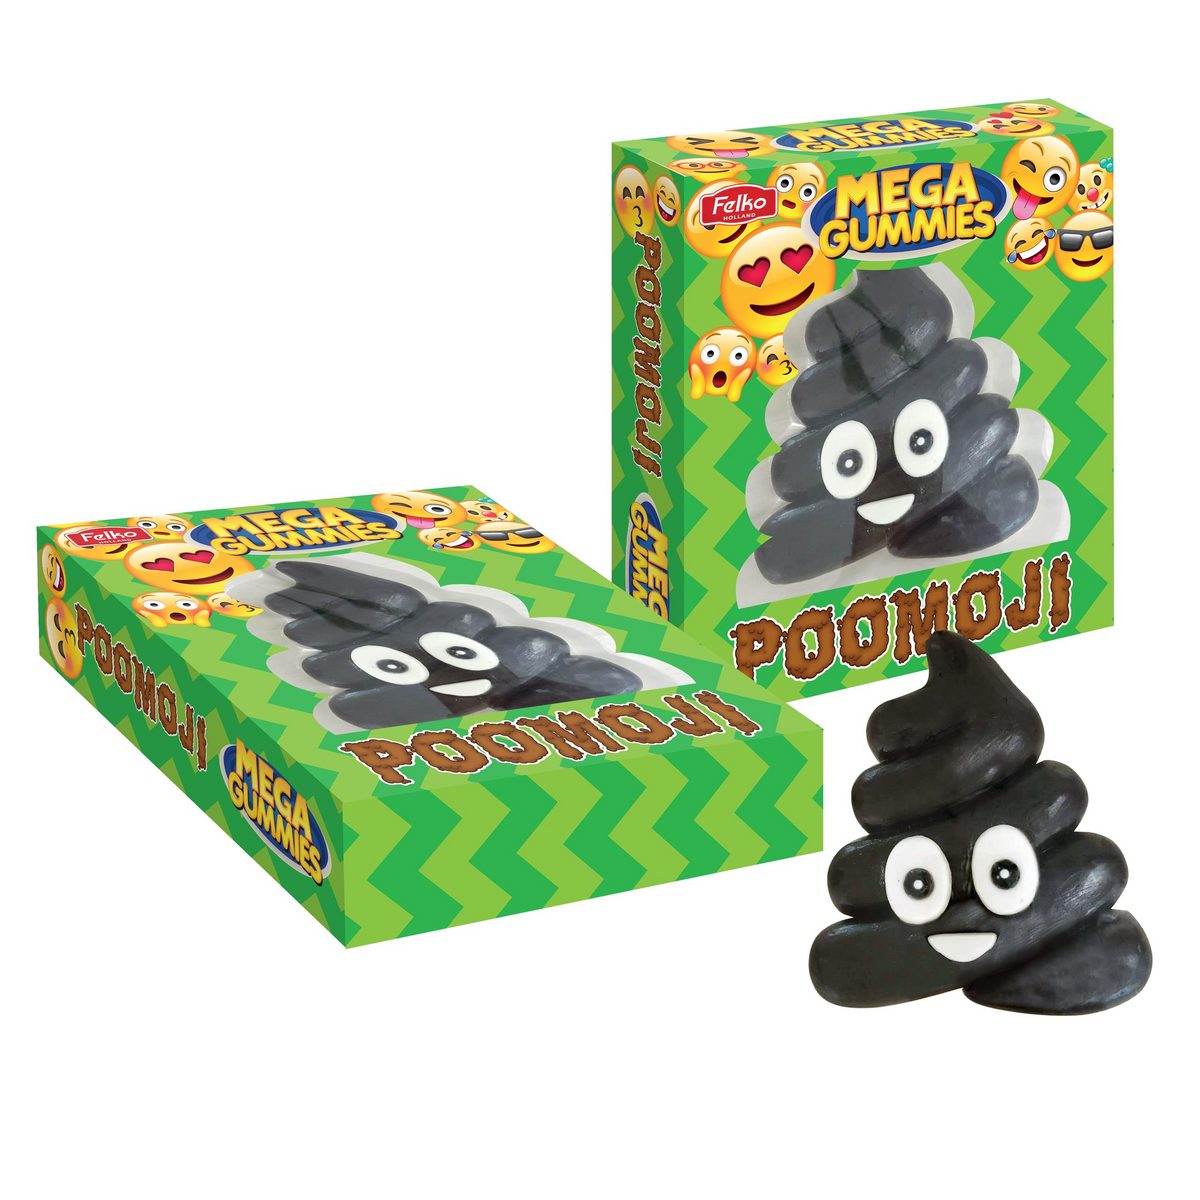 Mega Gummies - Poo